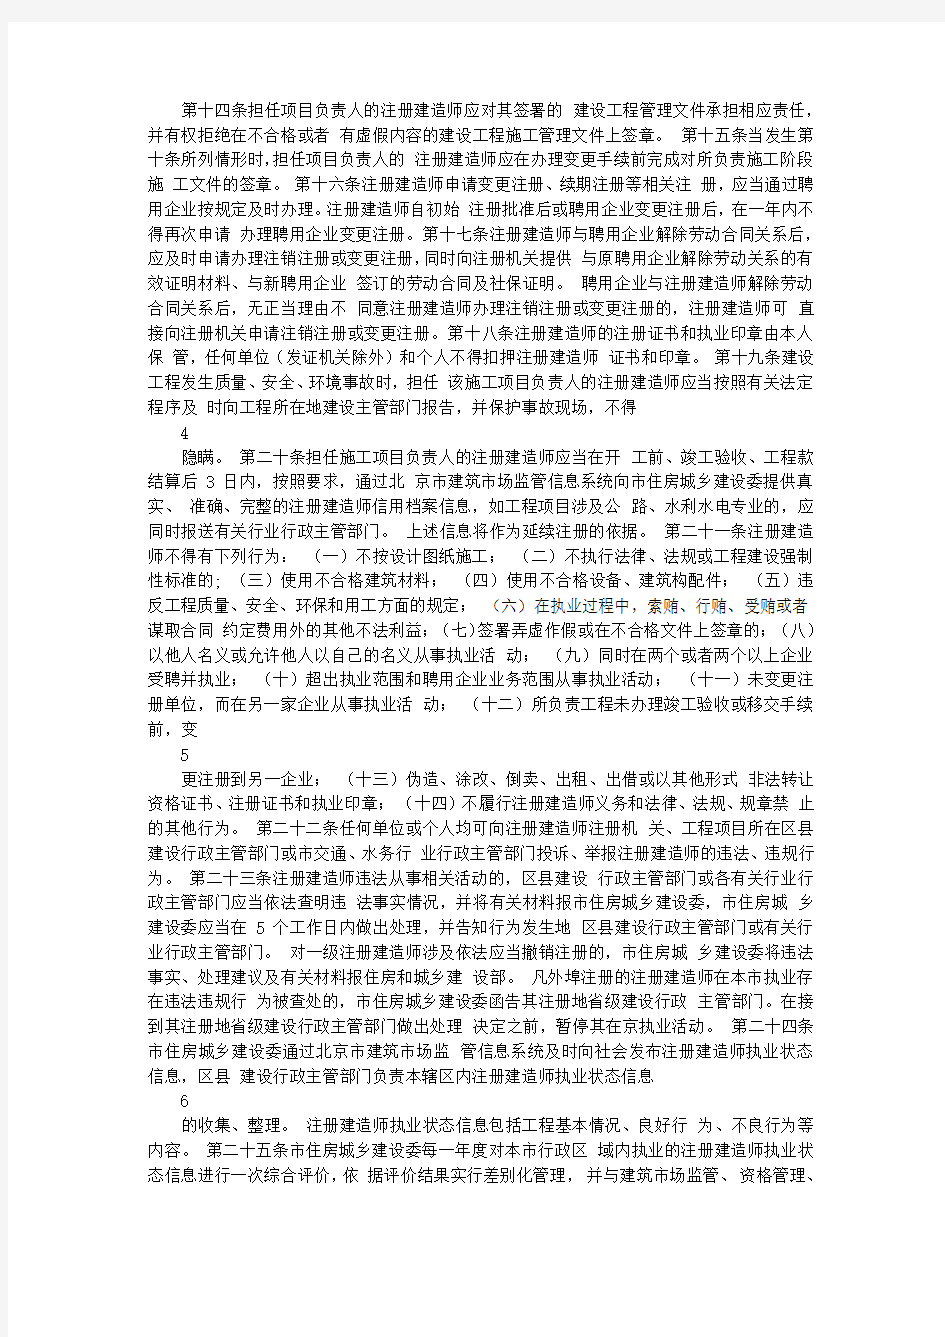 京建发[2011]103号 北京市注册建造师执业管理办法(试行)